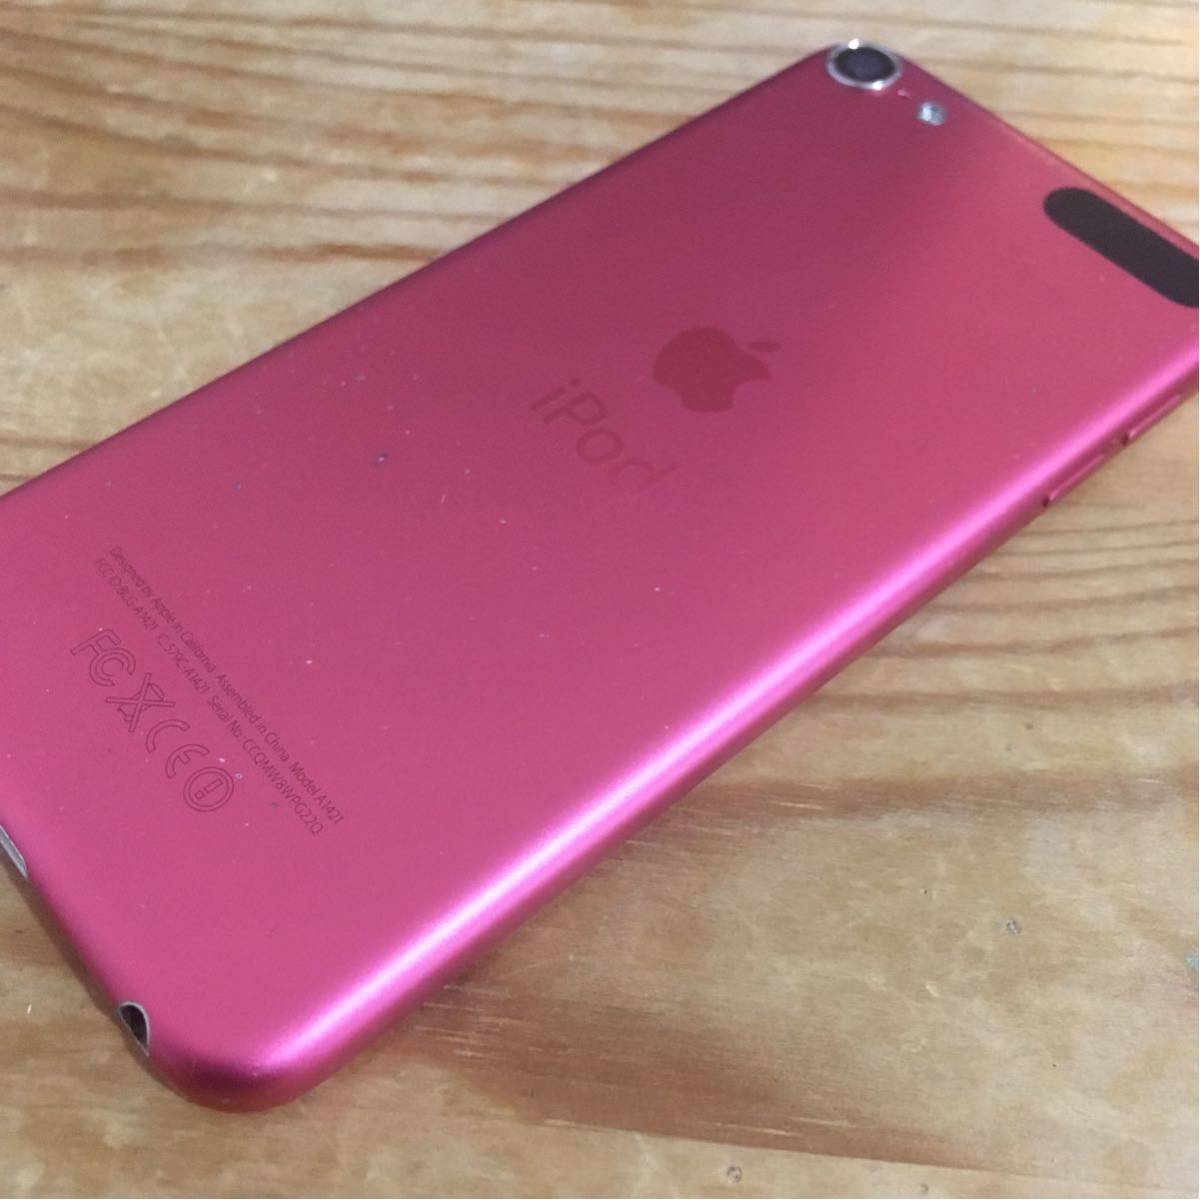 免費送貨Apple iPod touch第5代第6代16GB粉紅色美容項目 原文:送料無料 Apple iPod touch 第5世代 第6世代 16GB ピンク 美品